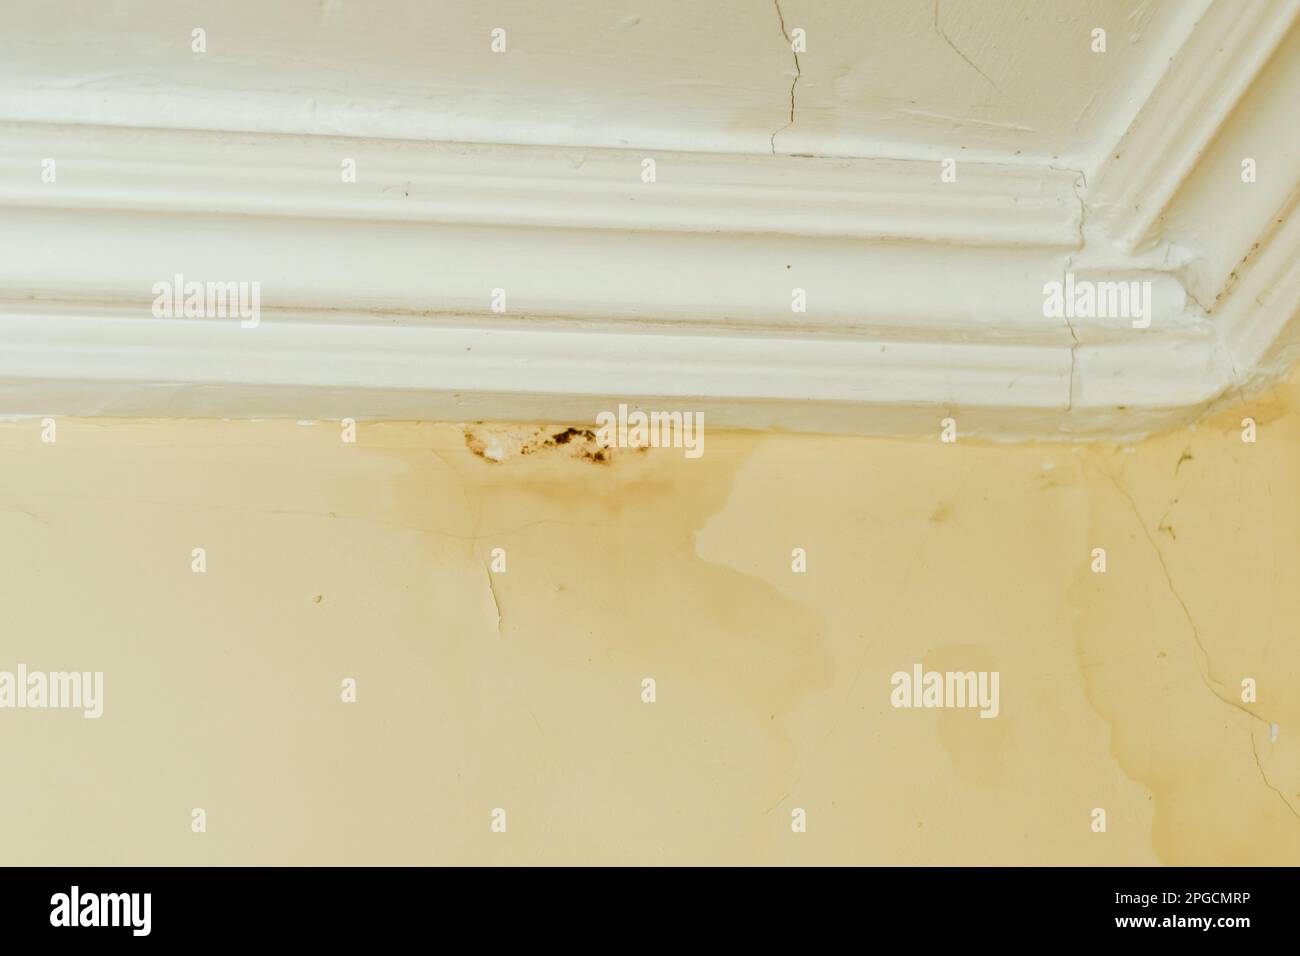 Le moule provient d'une fuite au niveau du toit. Taches d'eau et moisissures sur un mur beige. Ancien toit. Fissures sur le plafond et le mur. Banque D'Images